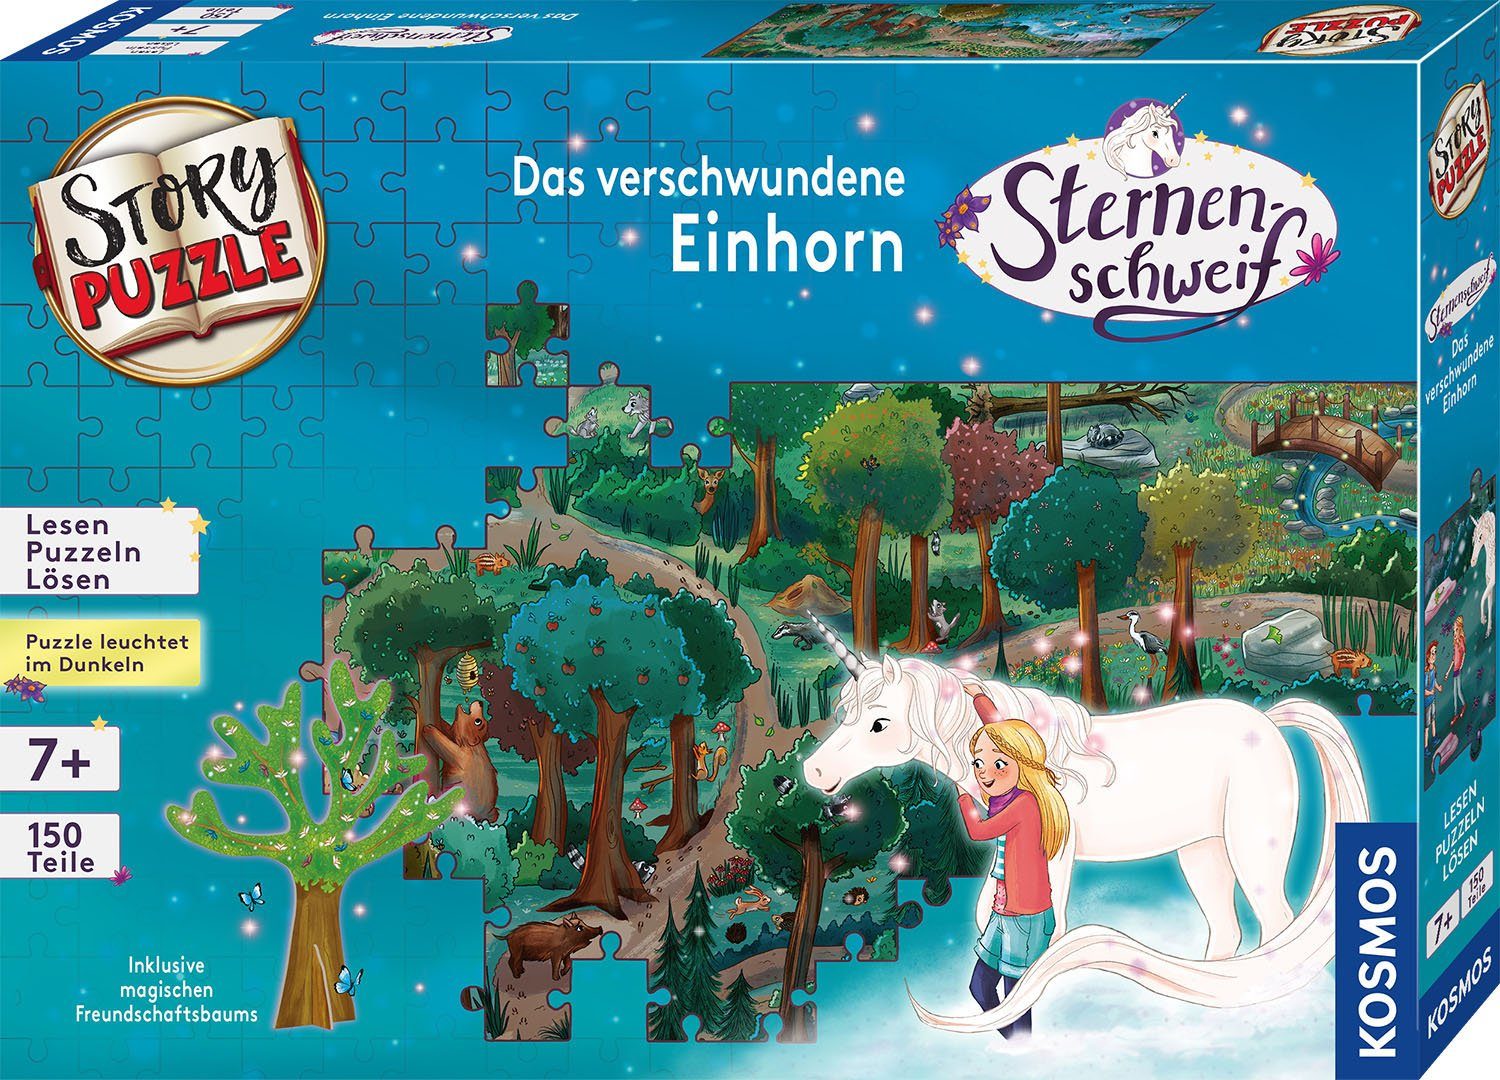 Kosmos Puzzleteile, Einhorn, verschwundene 150 StoryPuzzle, Puzzle Sternenschweif, Das in Germany Made